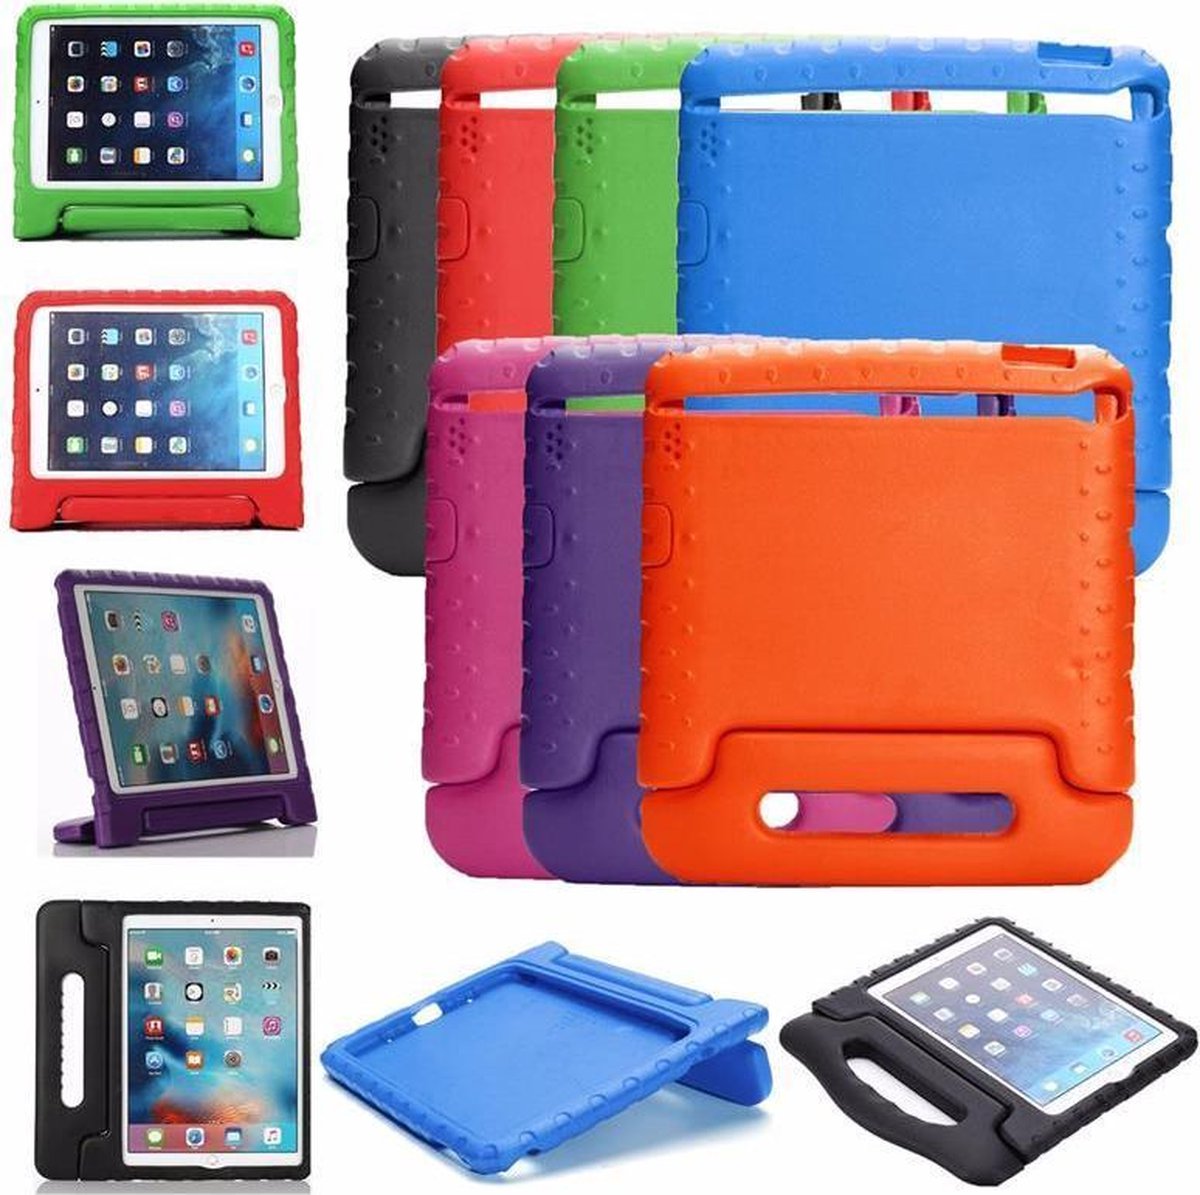 geschikt voor iPad hoes voor kinderen - geschikt voor iPad AIR 2 - foam kids cover - beste bescherming